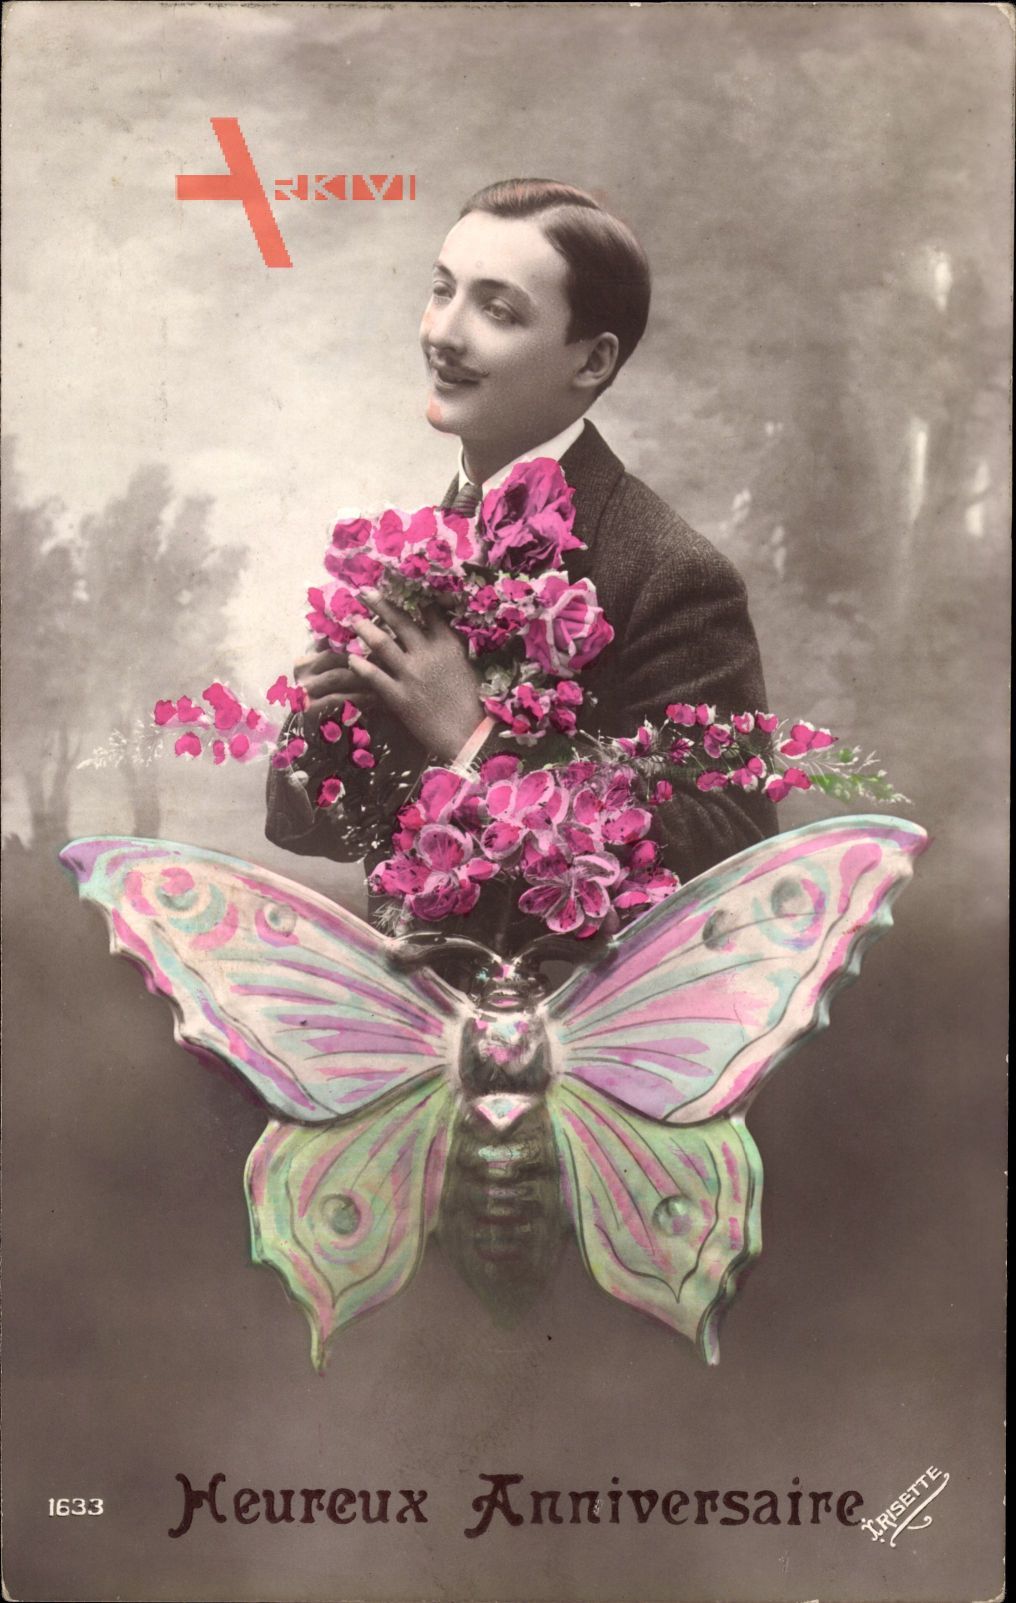 Glückwunsch, Heureux Anniversaire, Mann mit Blumen, Schmetterling